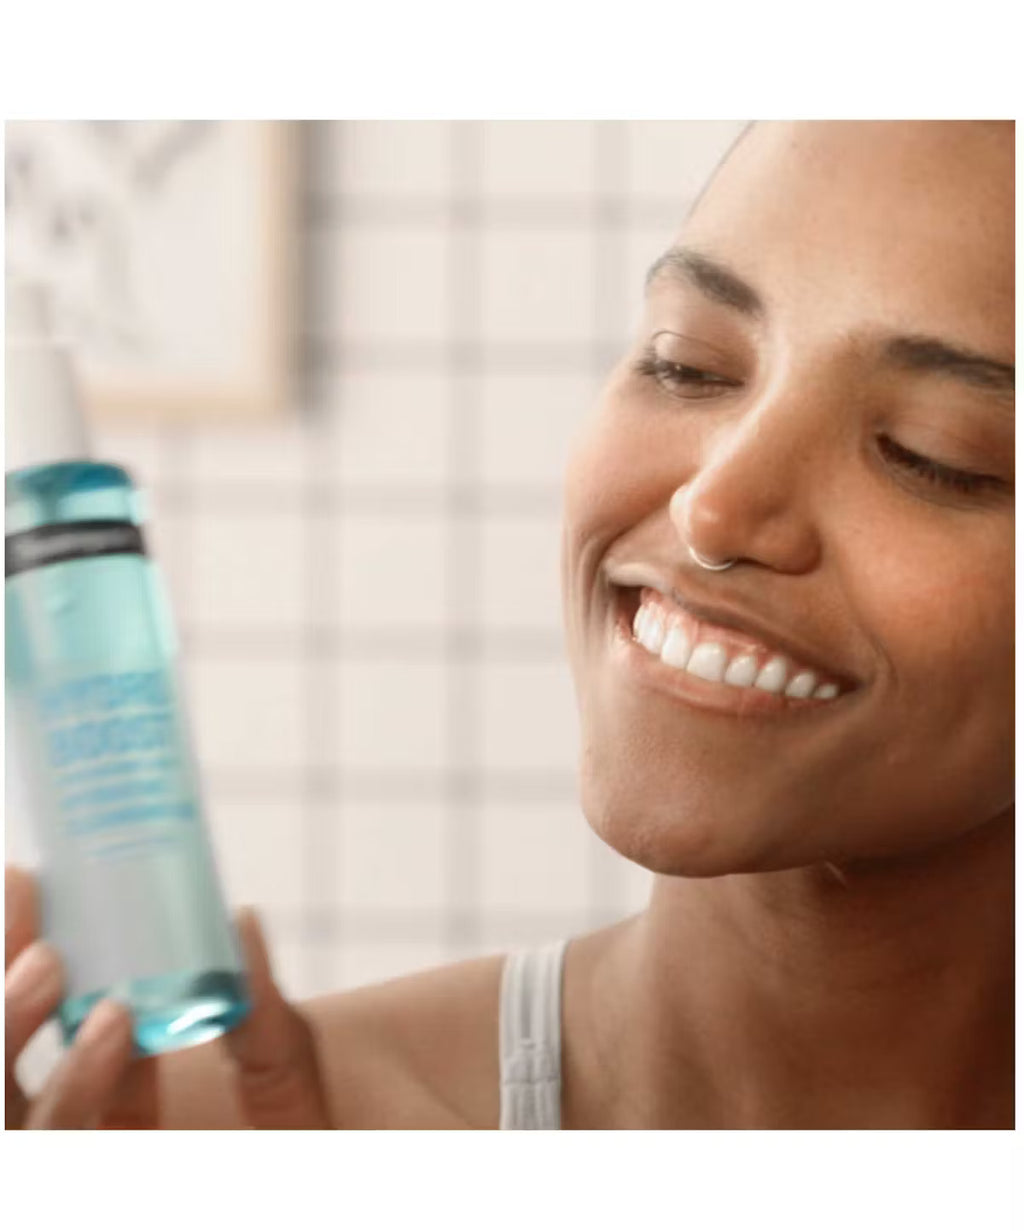 Neutrogena Hydro Boost Fragrance-Free Hydrating Cleansing Gel